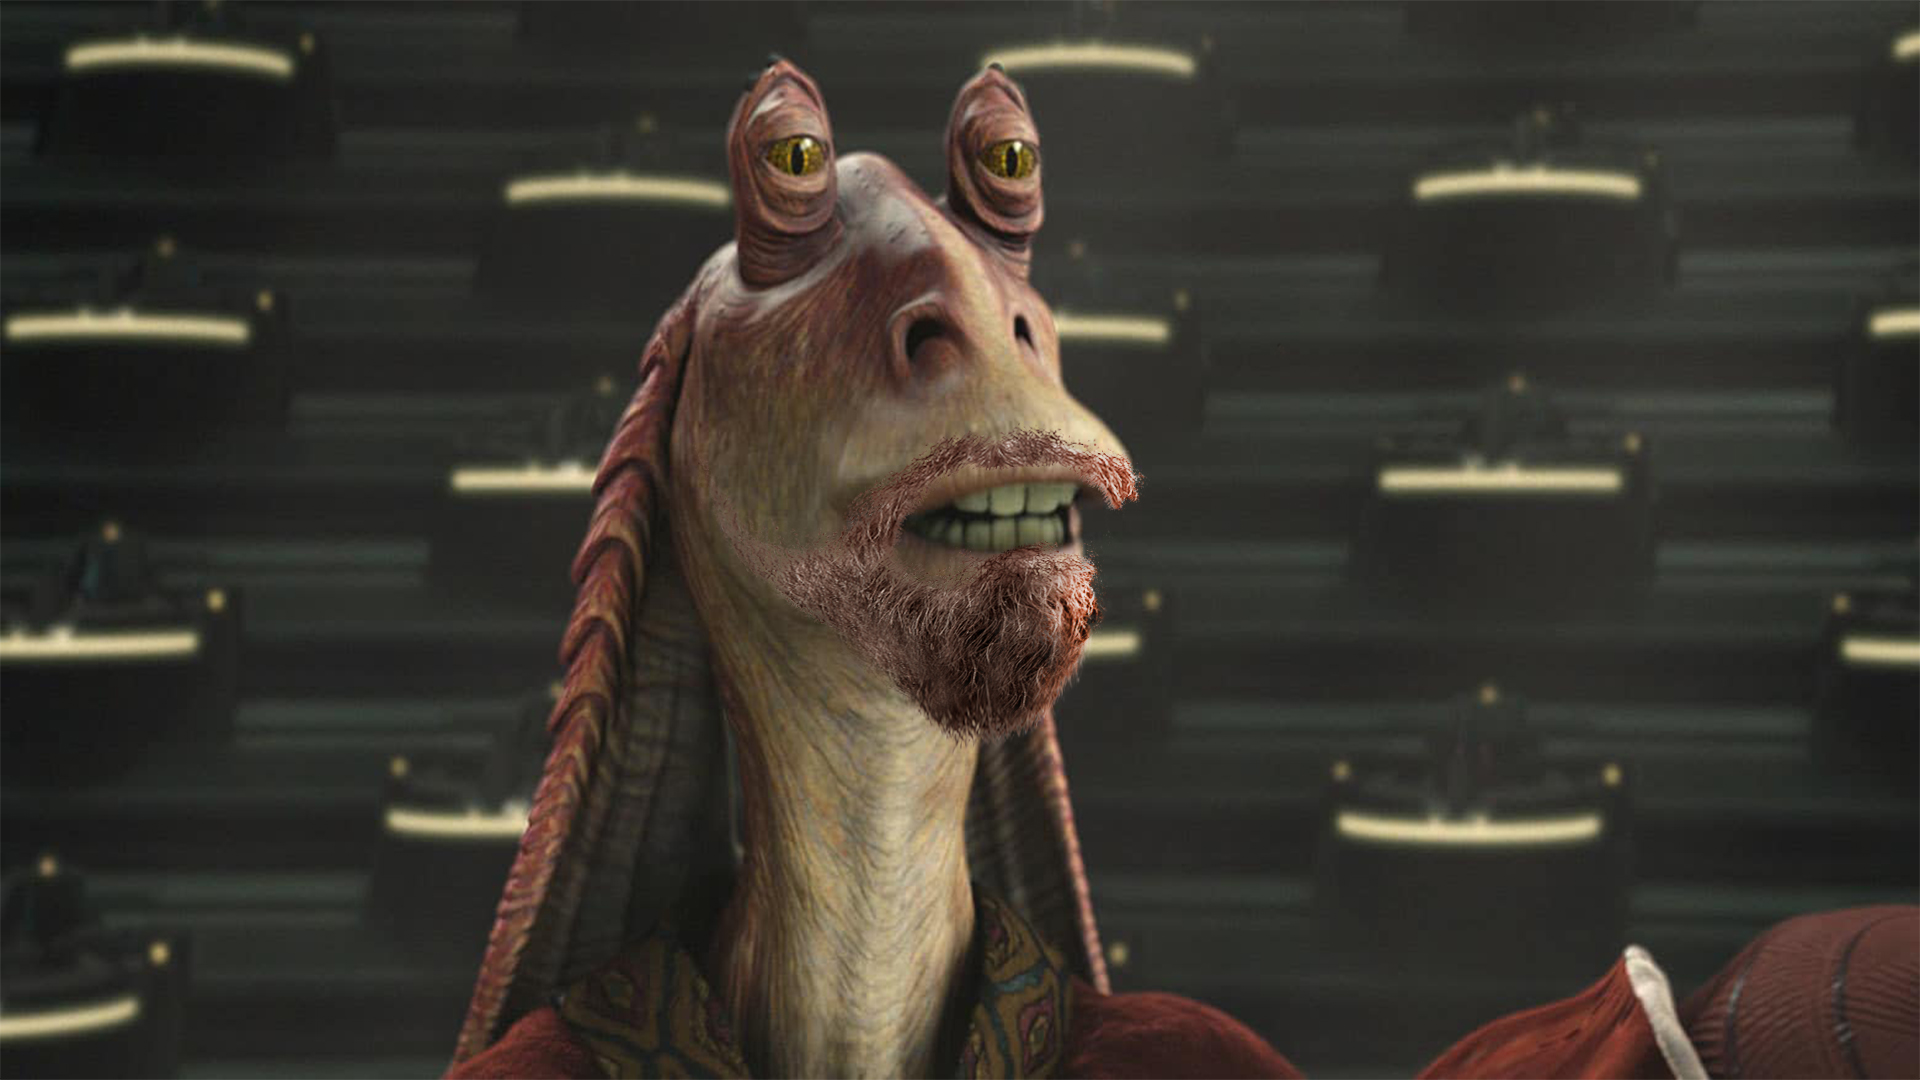 Obi-Wan Kenobi: Jar-Jar Binks Will Not Appear in New Disney+ Series